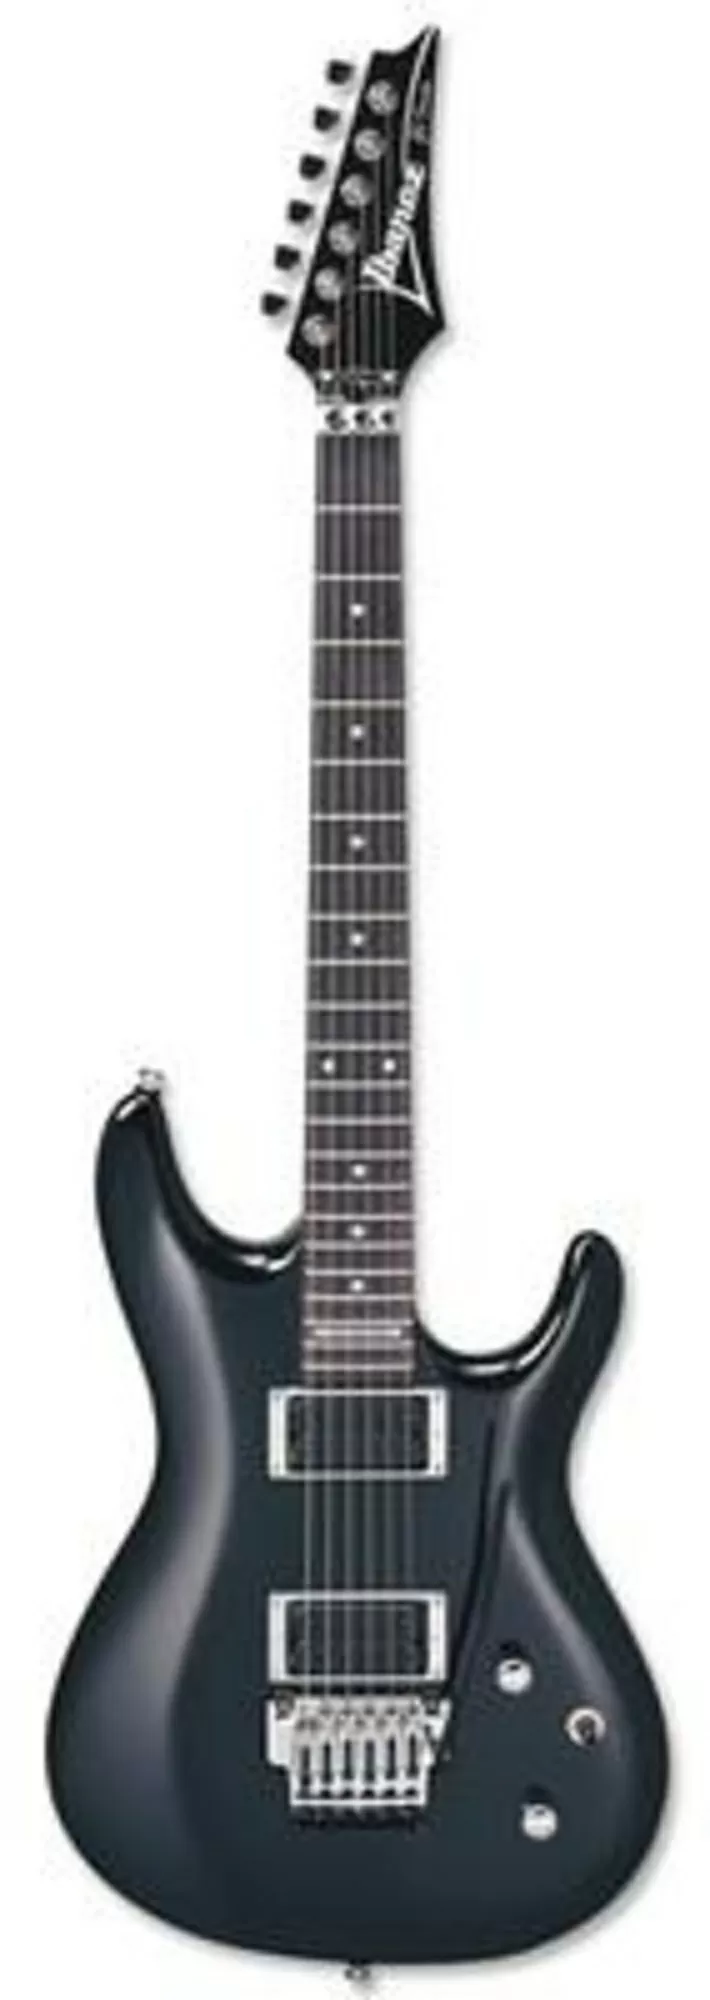 Электро-гитара Ibanez JS100 модель Joe Satriani 